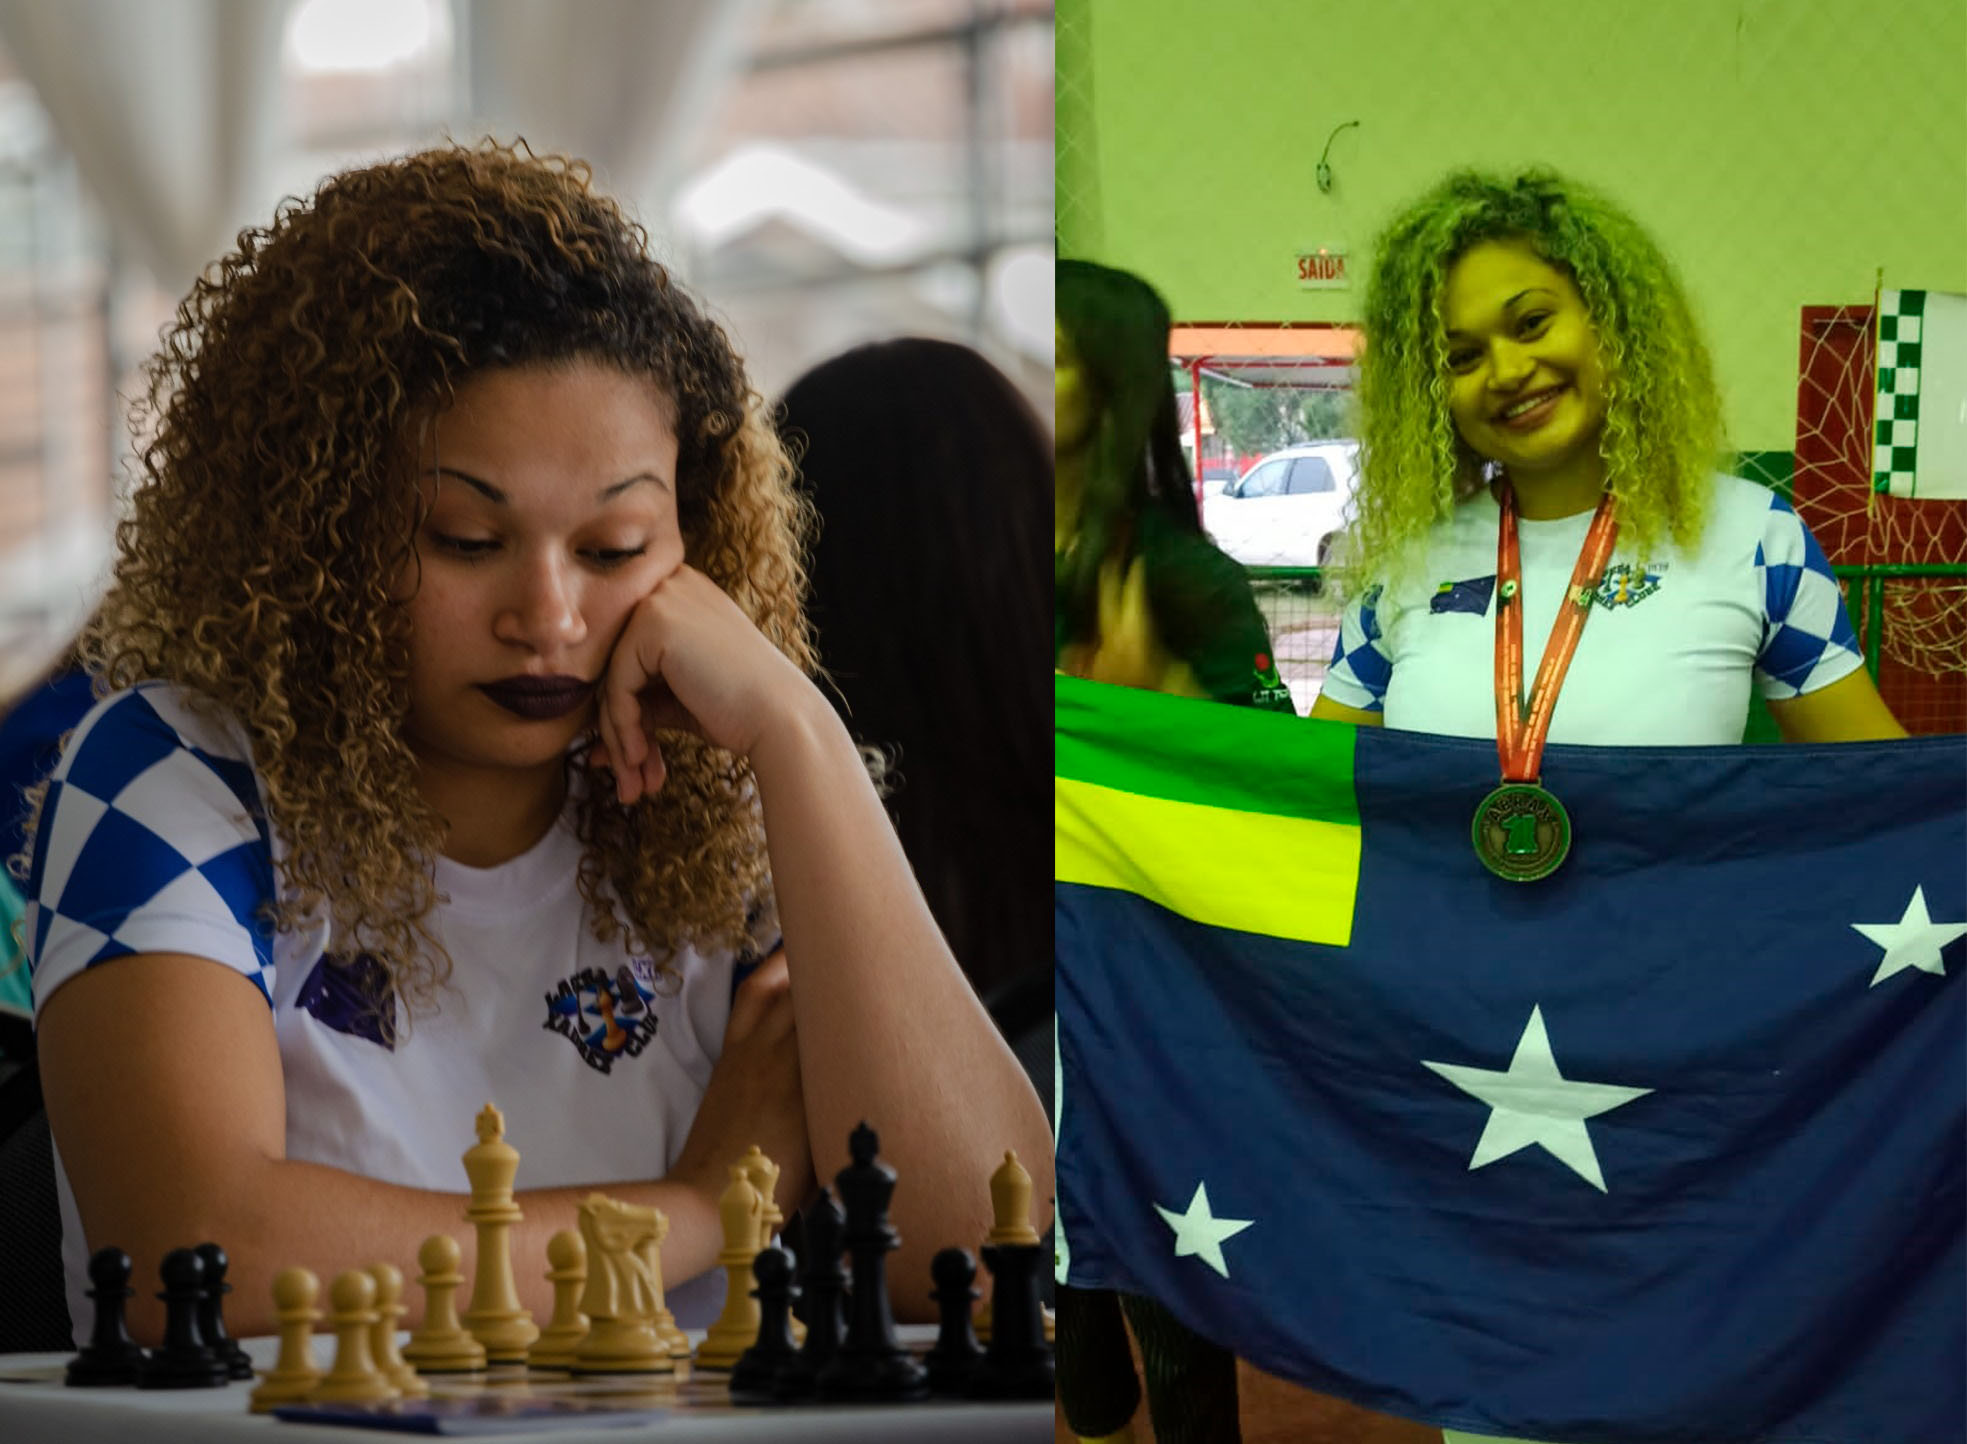 Finais do Campeonato Brasileiro Absoluto e Feminino de Xadrez